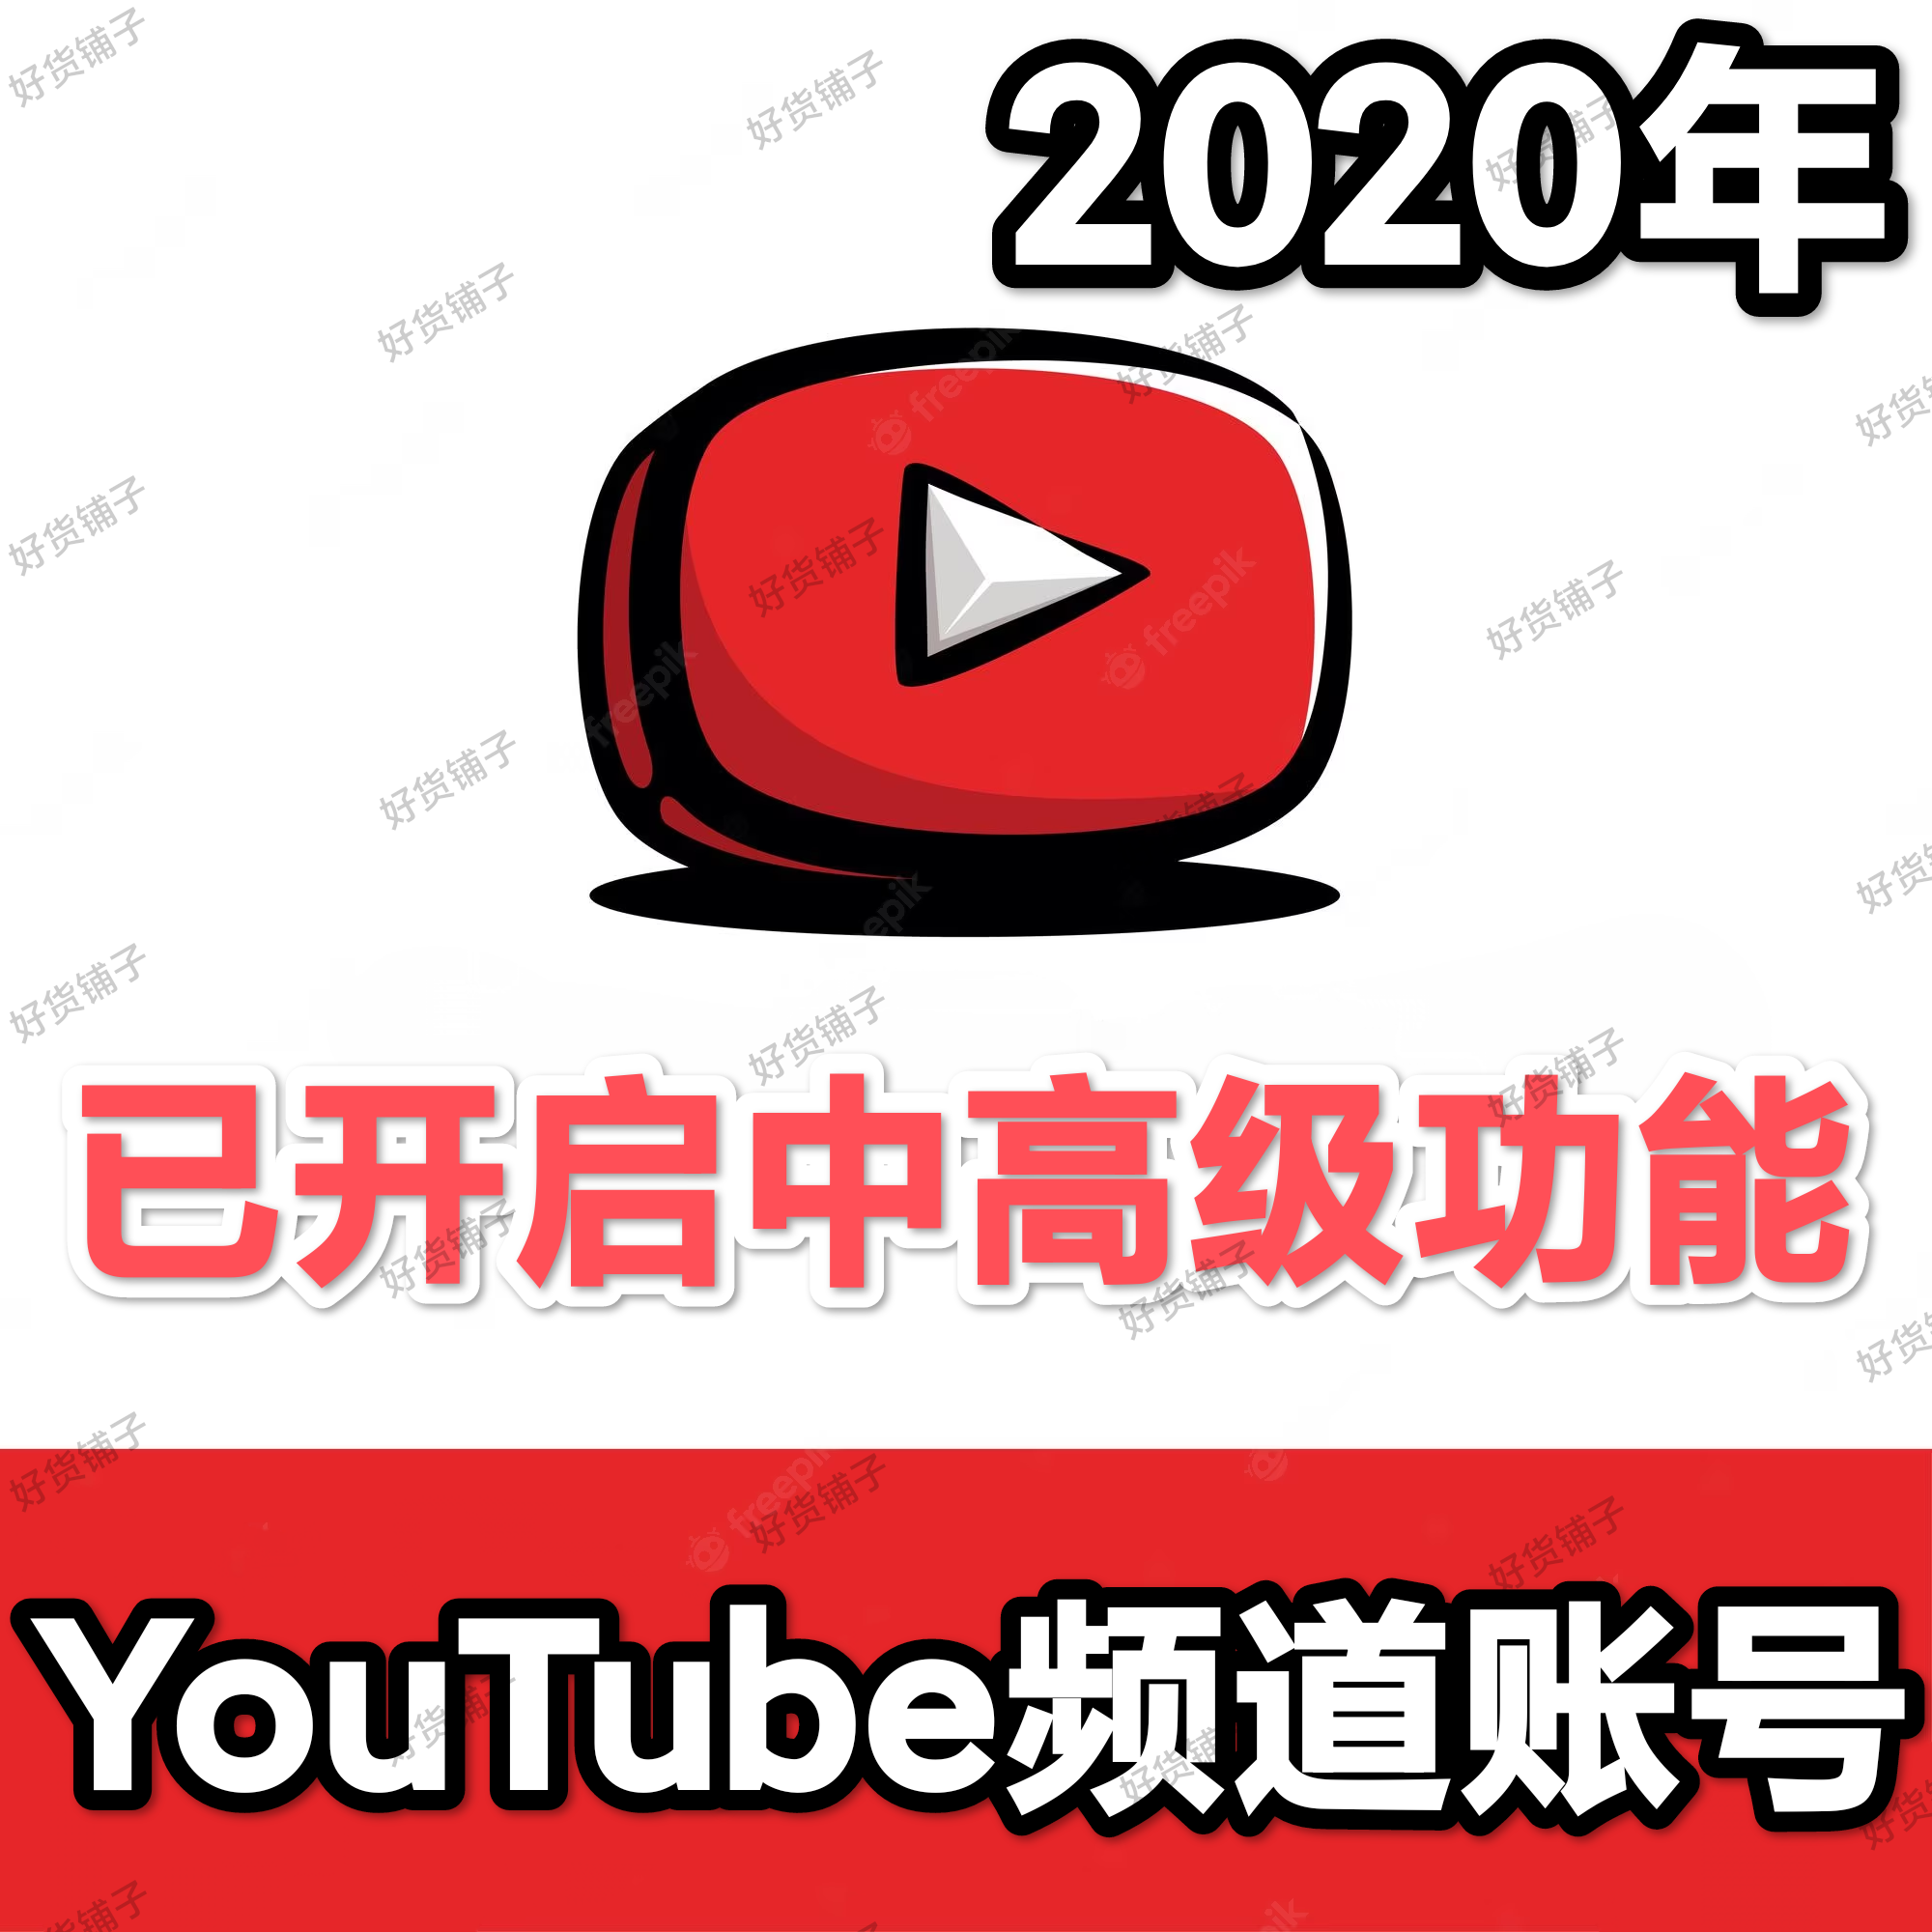 2020年YouTube频道老账号（963个粉丝订阅+1.2万以上历史播放+40个视频）（已开启中高级频道功能+支持放置外部链接等）